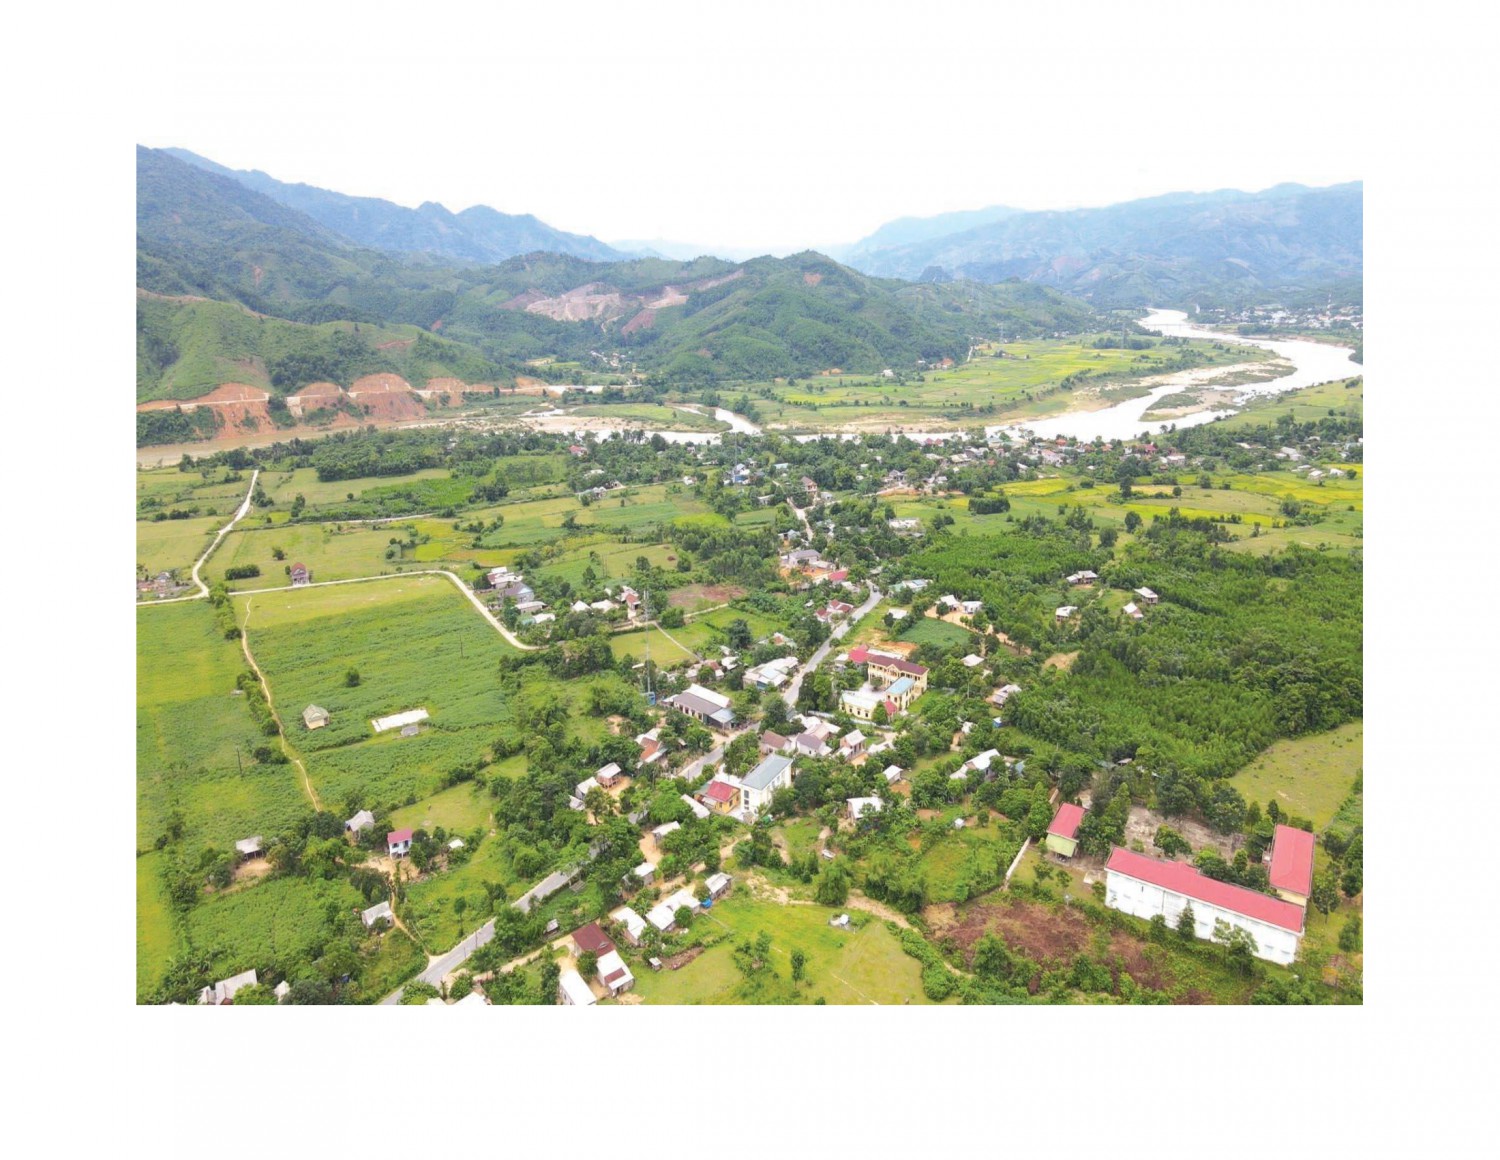 Bộ mặt nông thôn của xã Mò Ó, huyện Đakrông có nhiều khởi sắc sau gần 13 năm triển khai xây dựng NTM